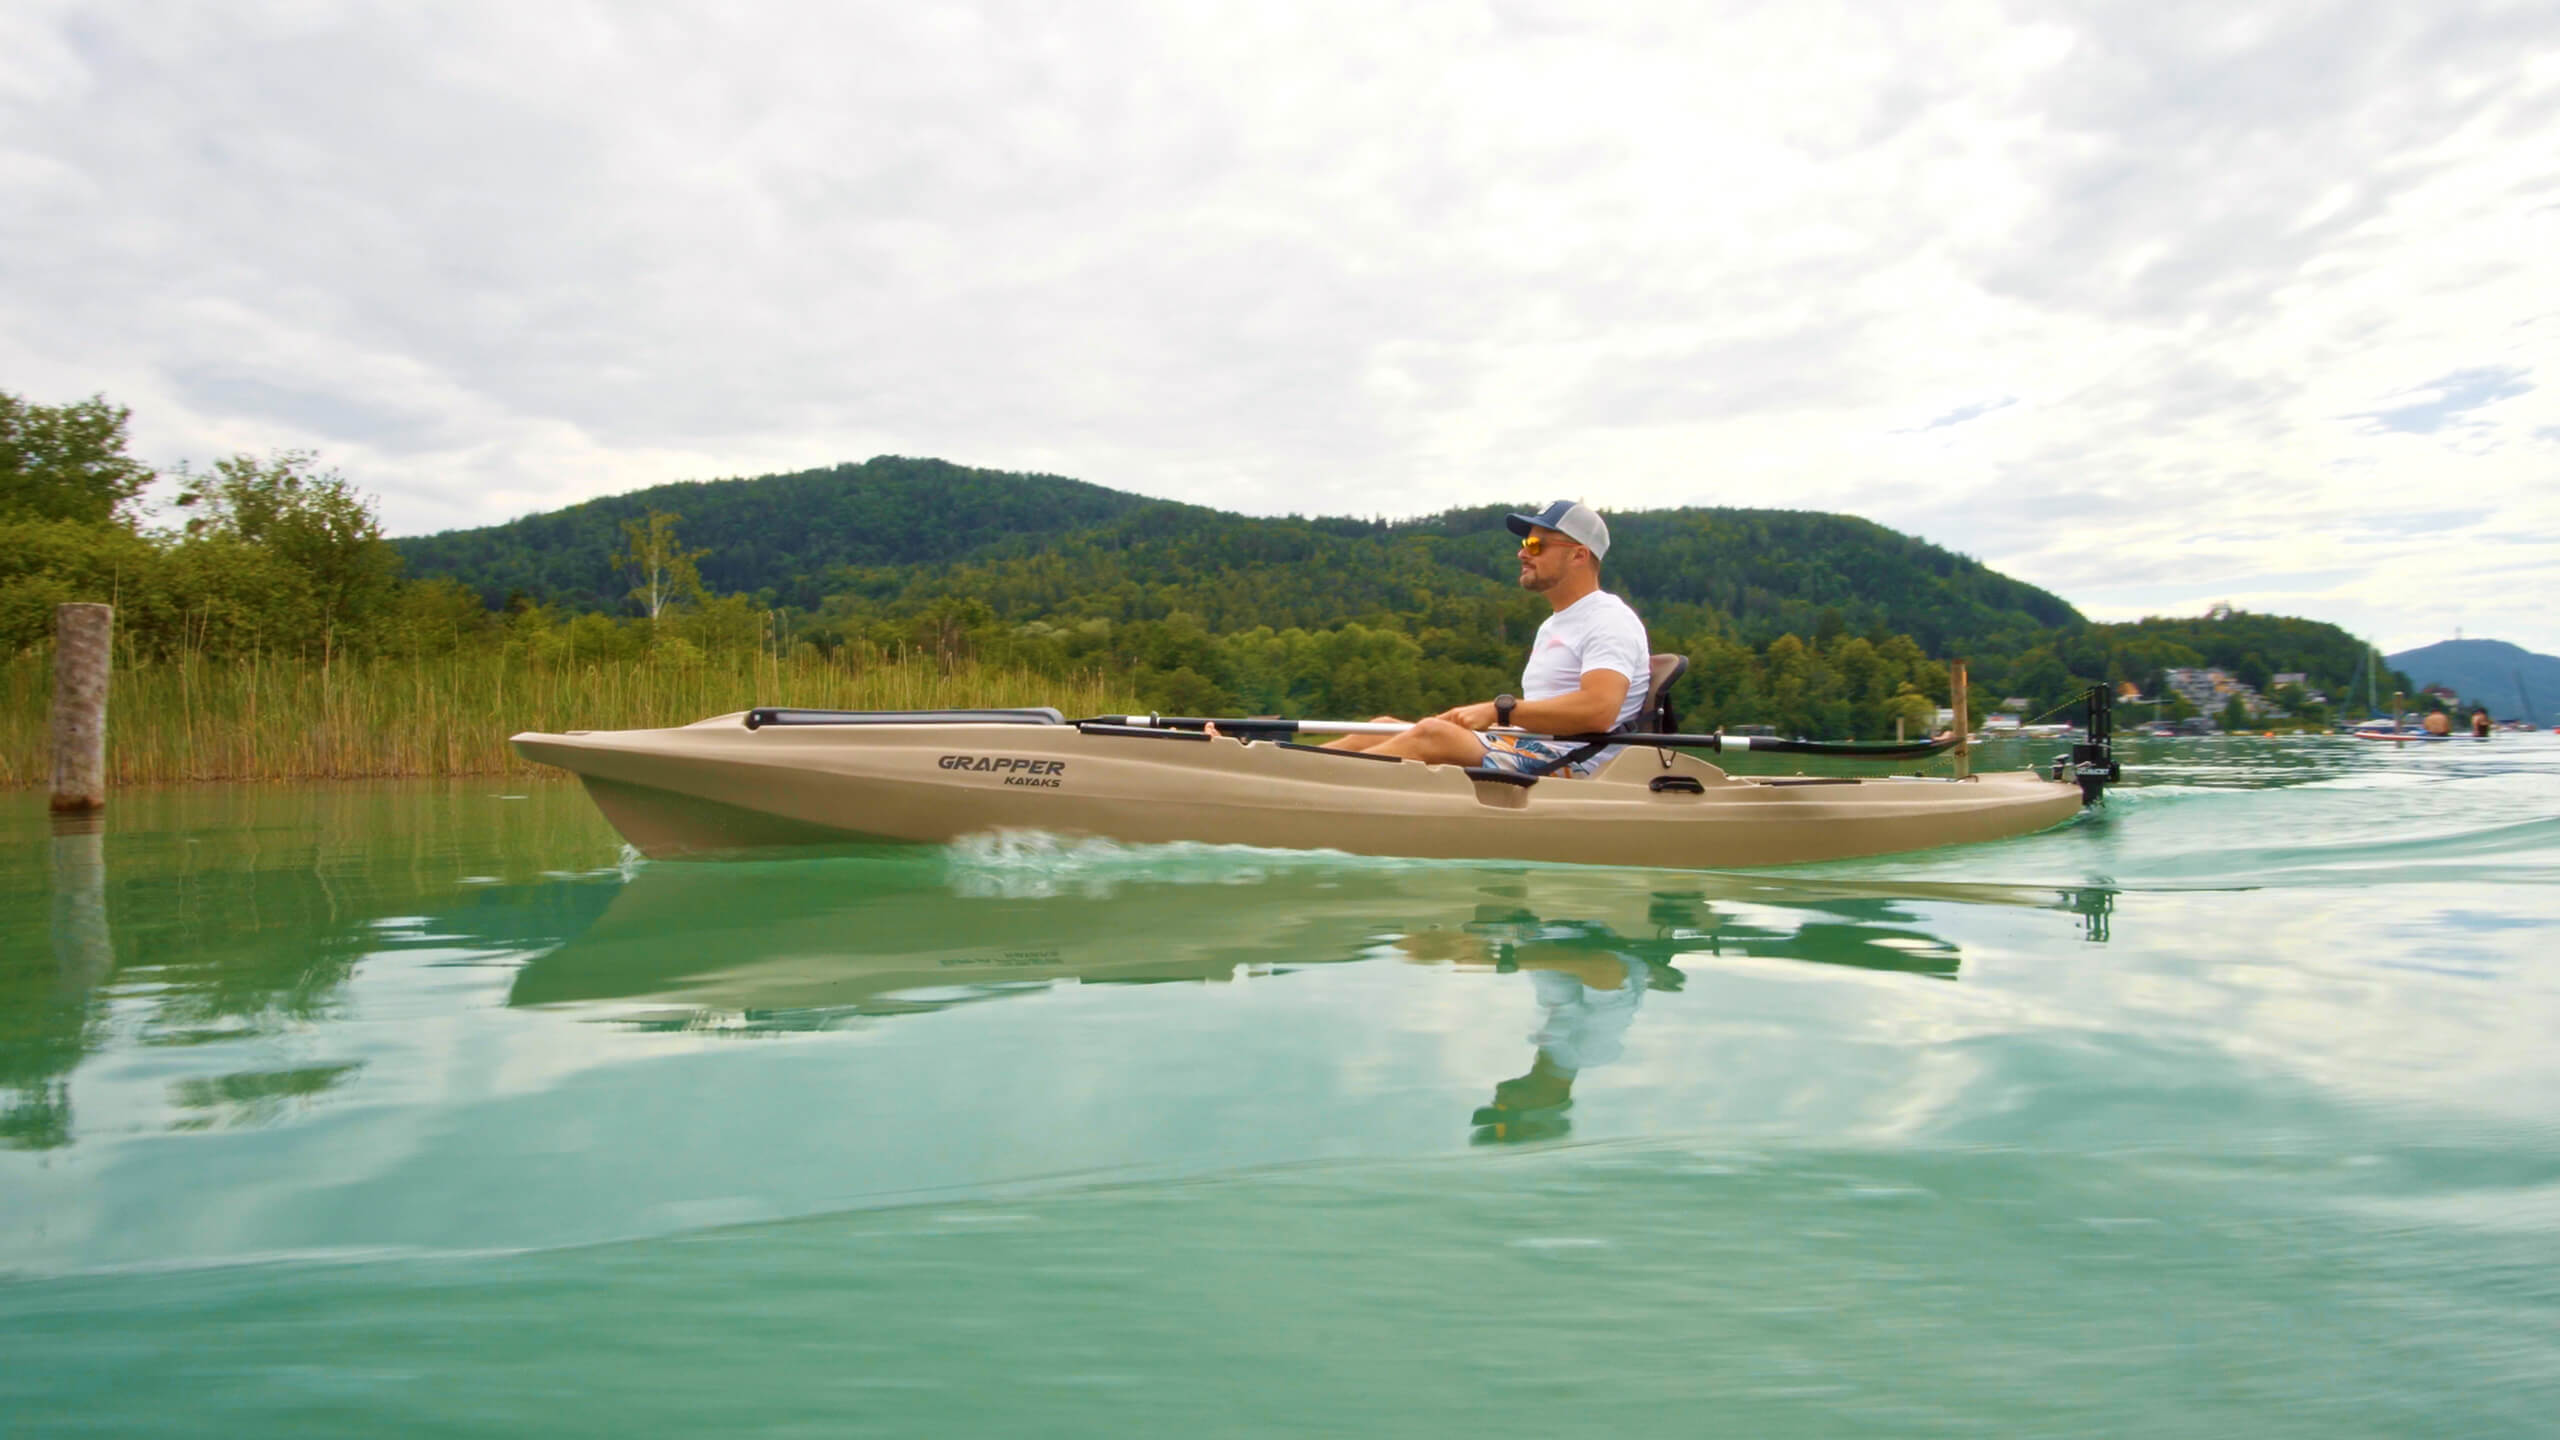 https://www.scubajet.com/media/%C2%A9SCUBAJET_Kayaking-with-the-SCUBAJET-PRO-rudder-adapter-1.jpg